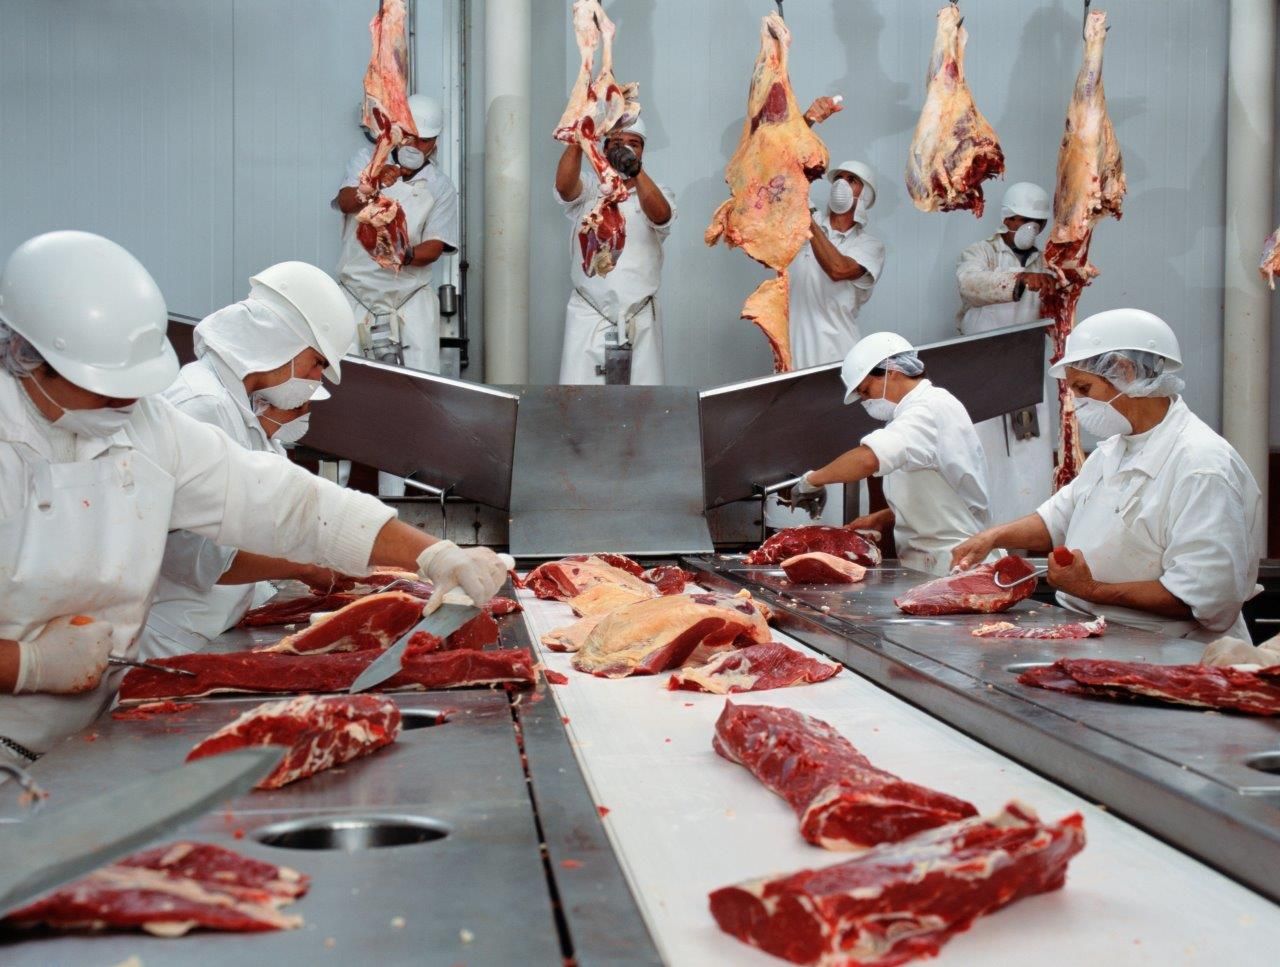 Carniceros despiezando carne de vaca en una sala